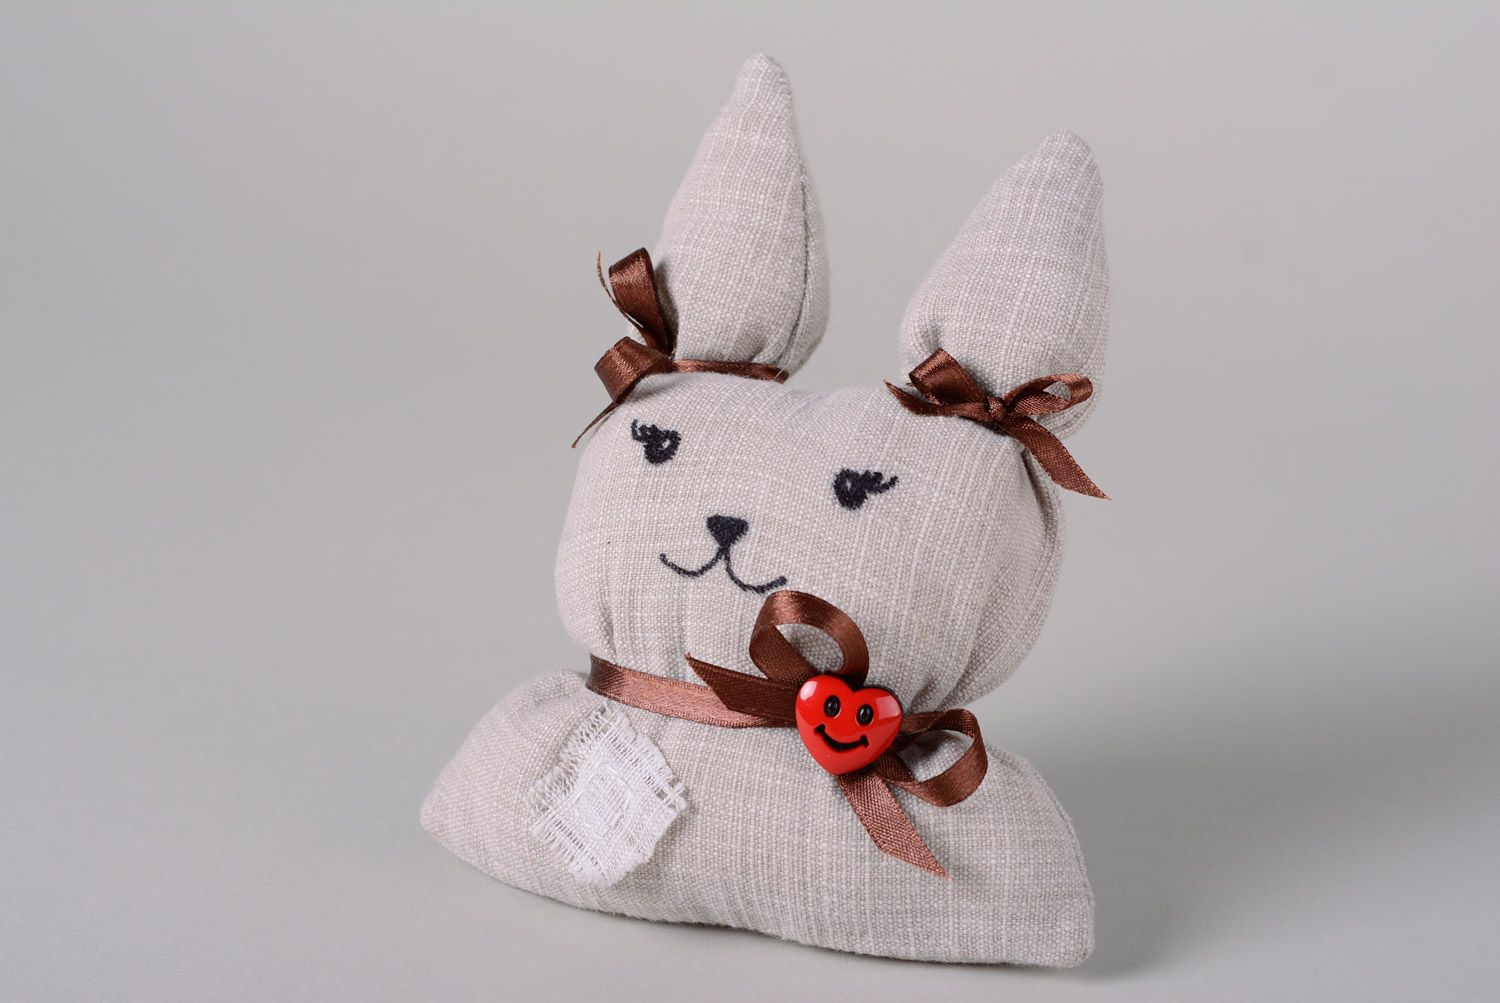 Textil Kuscheltier Hase aus Watte und Stoff weiß mit Schleife niedlich handmade foto 1